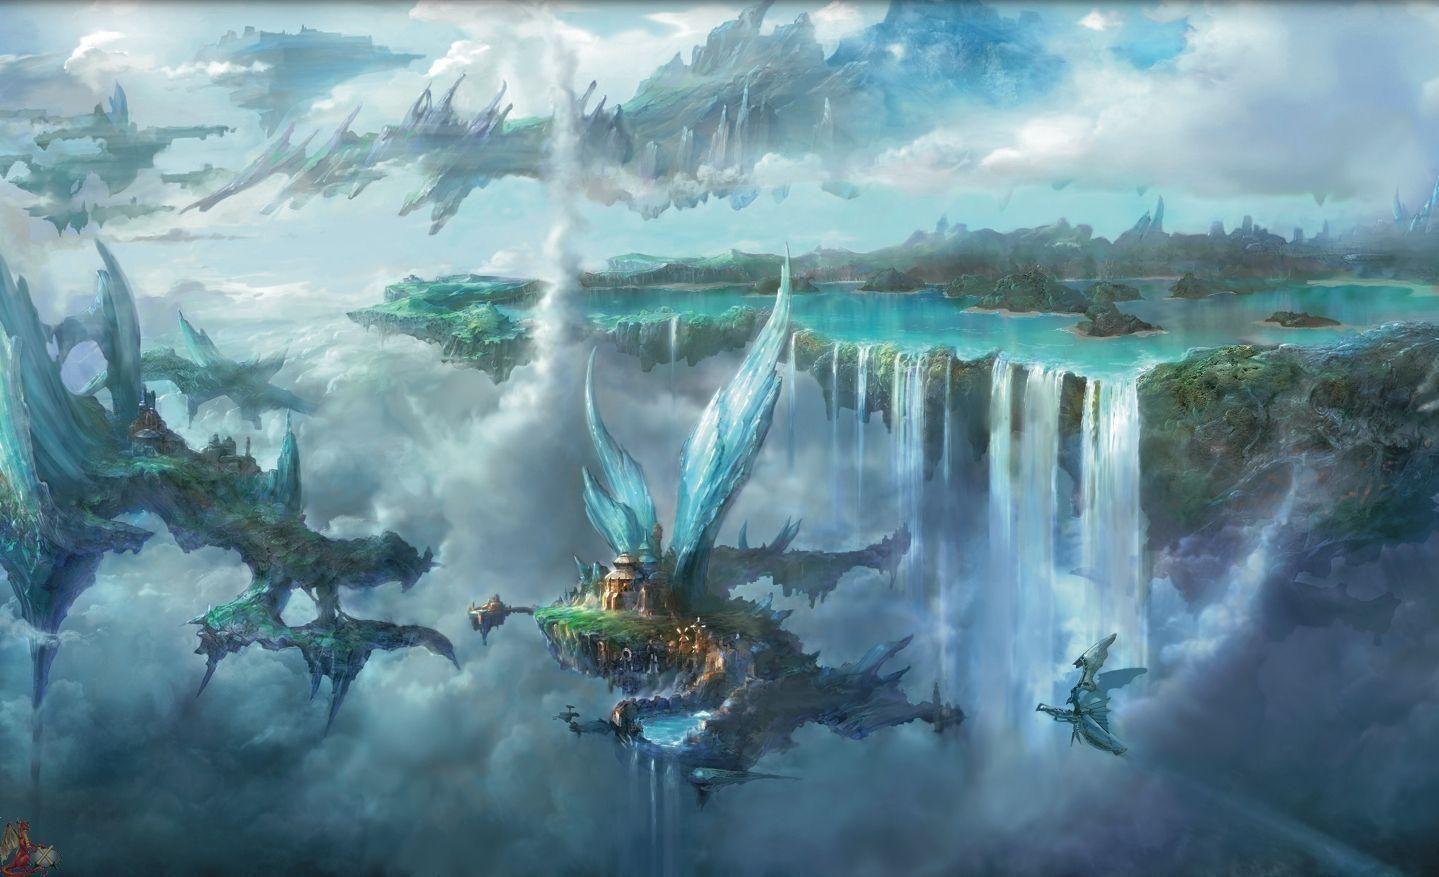 HD Final Fantasy Wallpaper. Fantasy